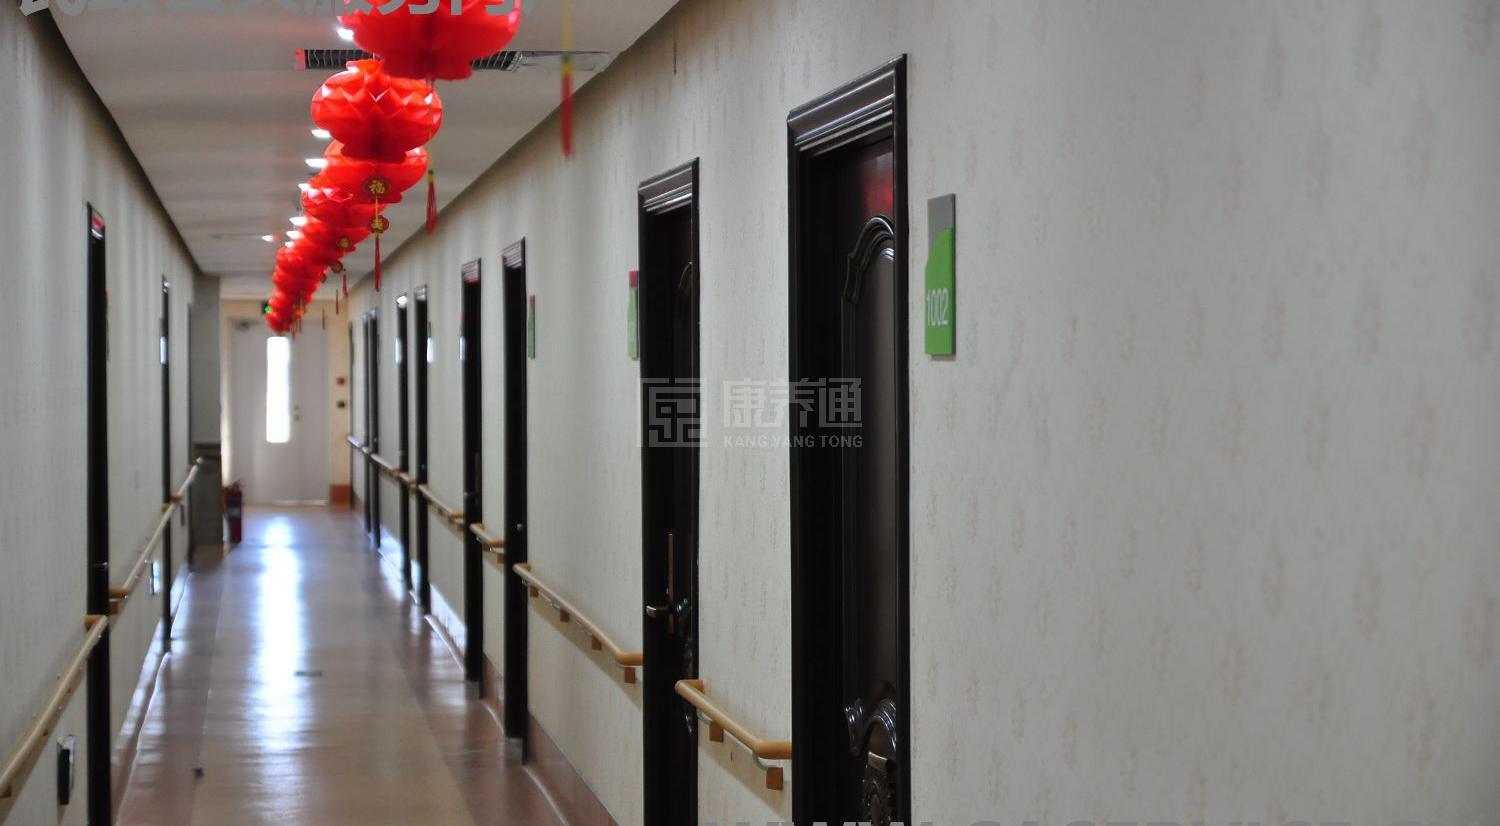 北京汇晨古塔老年公寓有限公司环境图-洗手间